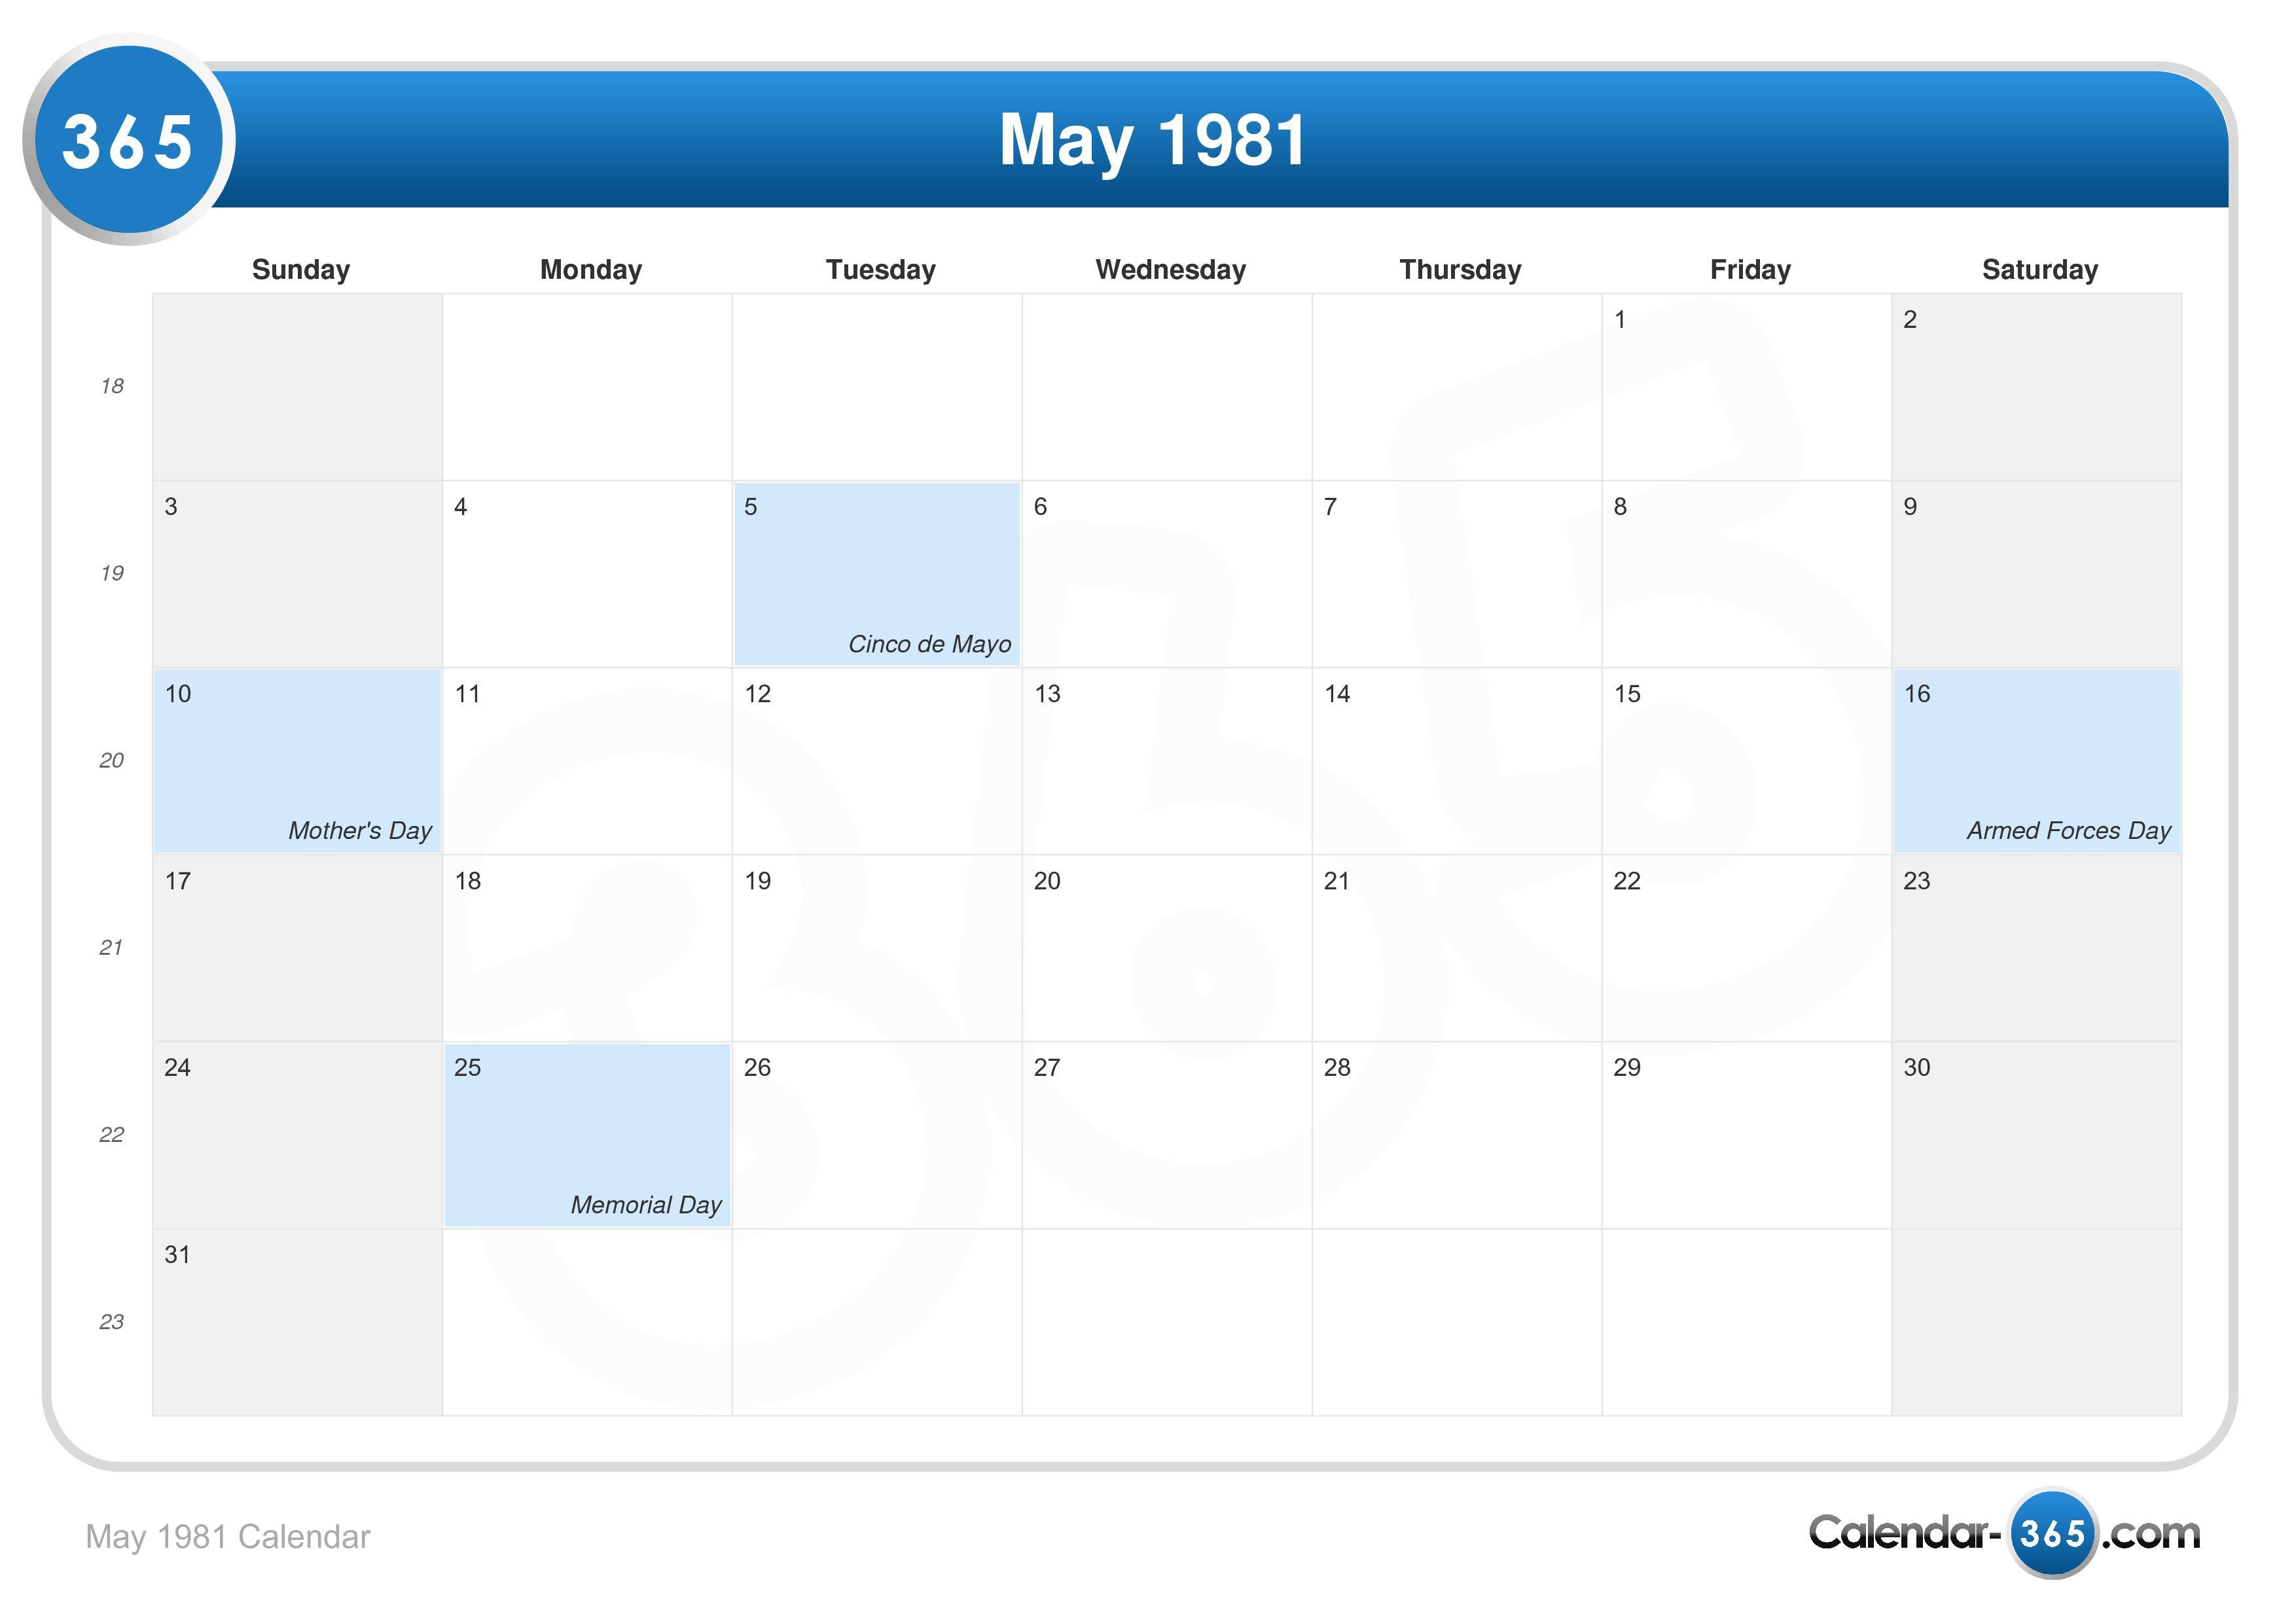 May 1981 Calendar